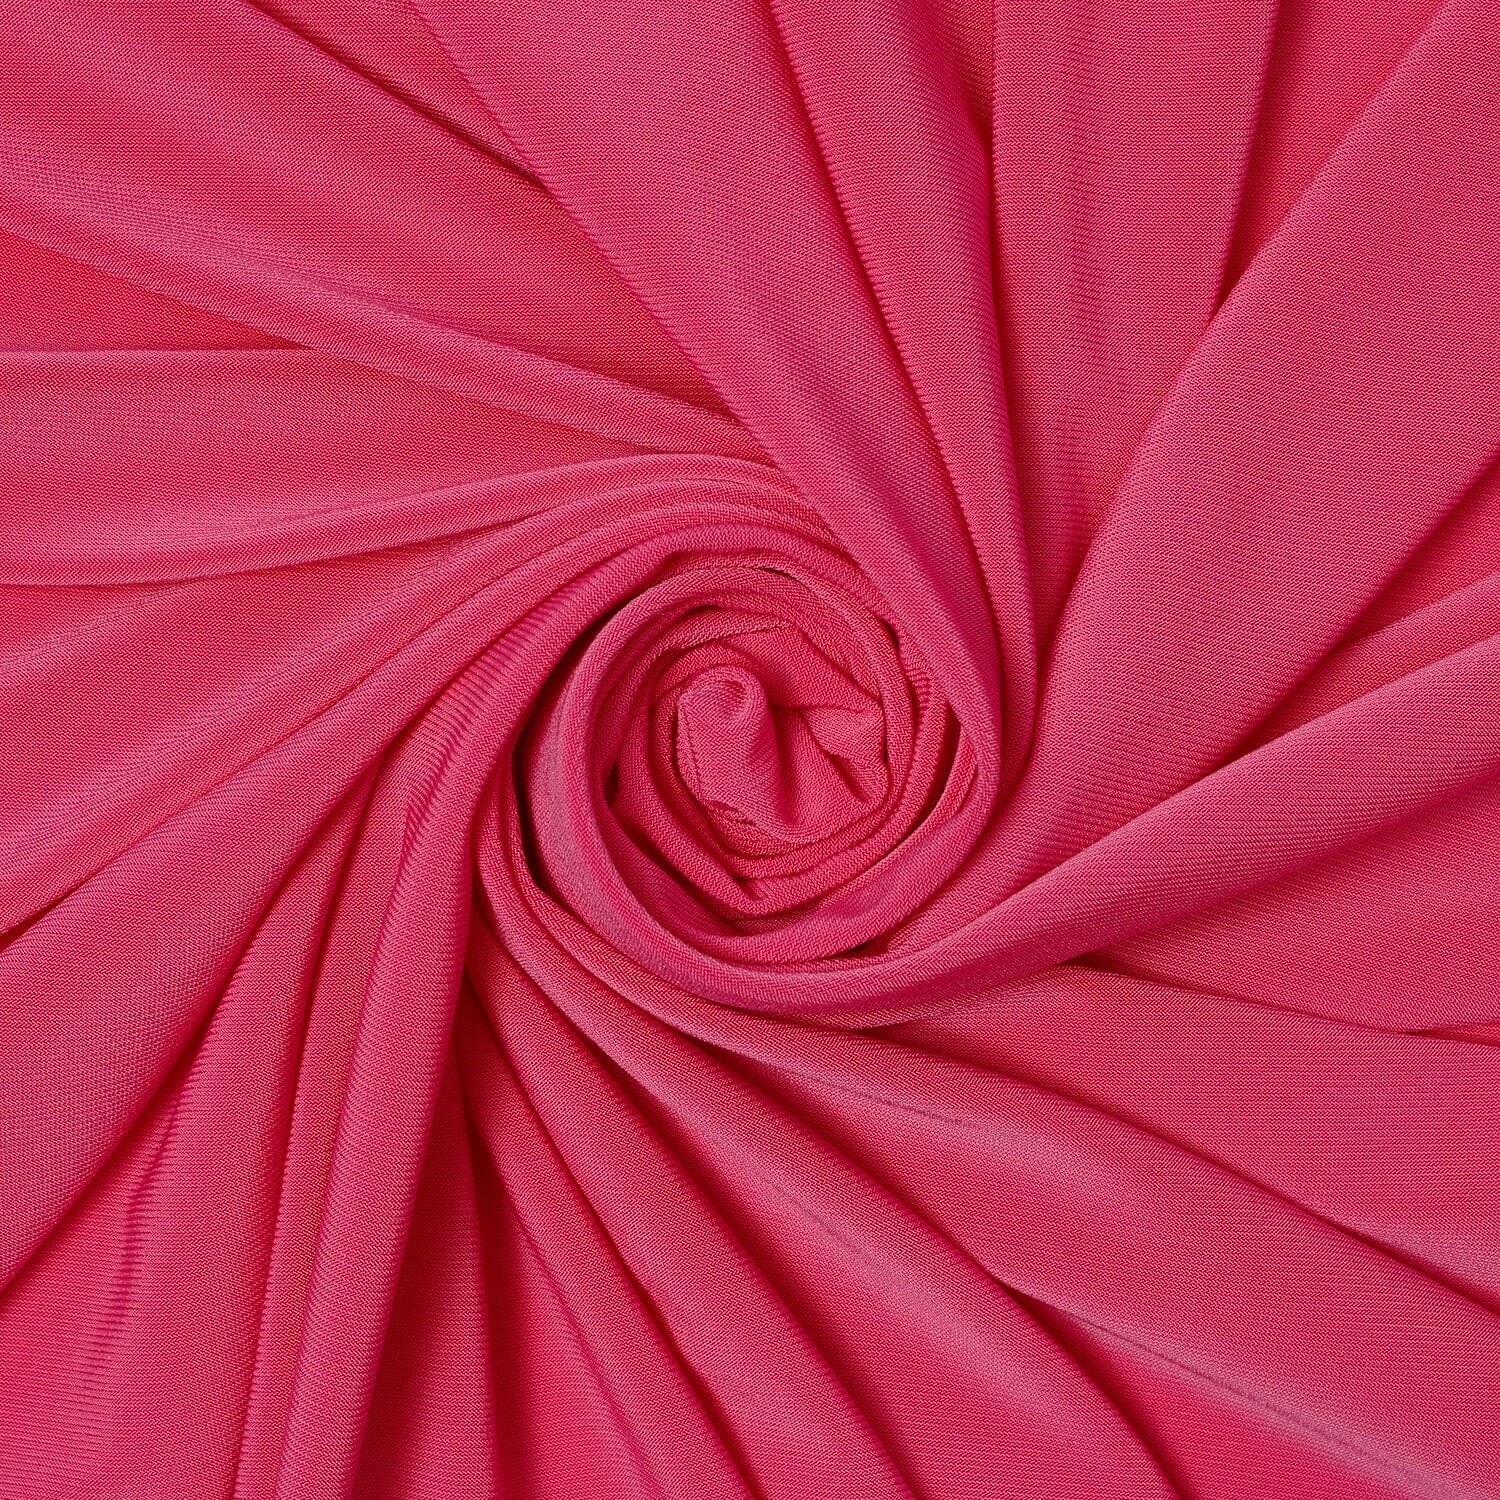 ITY Fabric Polyester Lycra Knit Jersey 2 Way Spandex Stretch 58